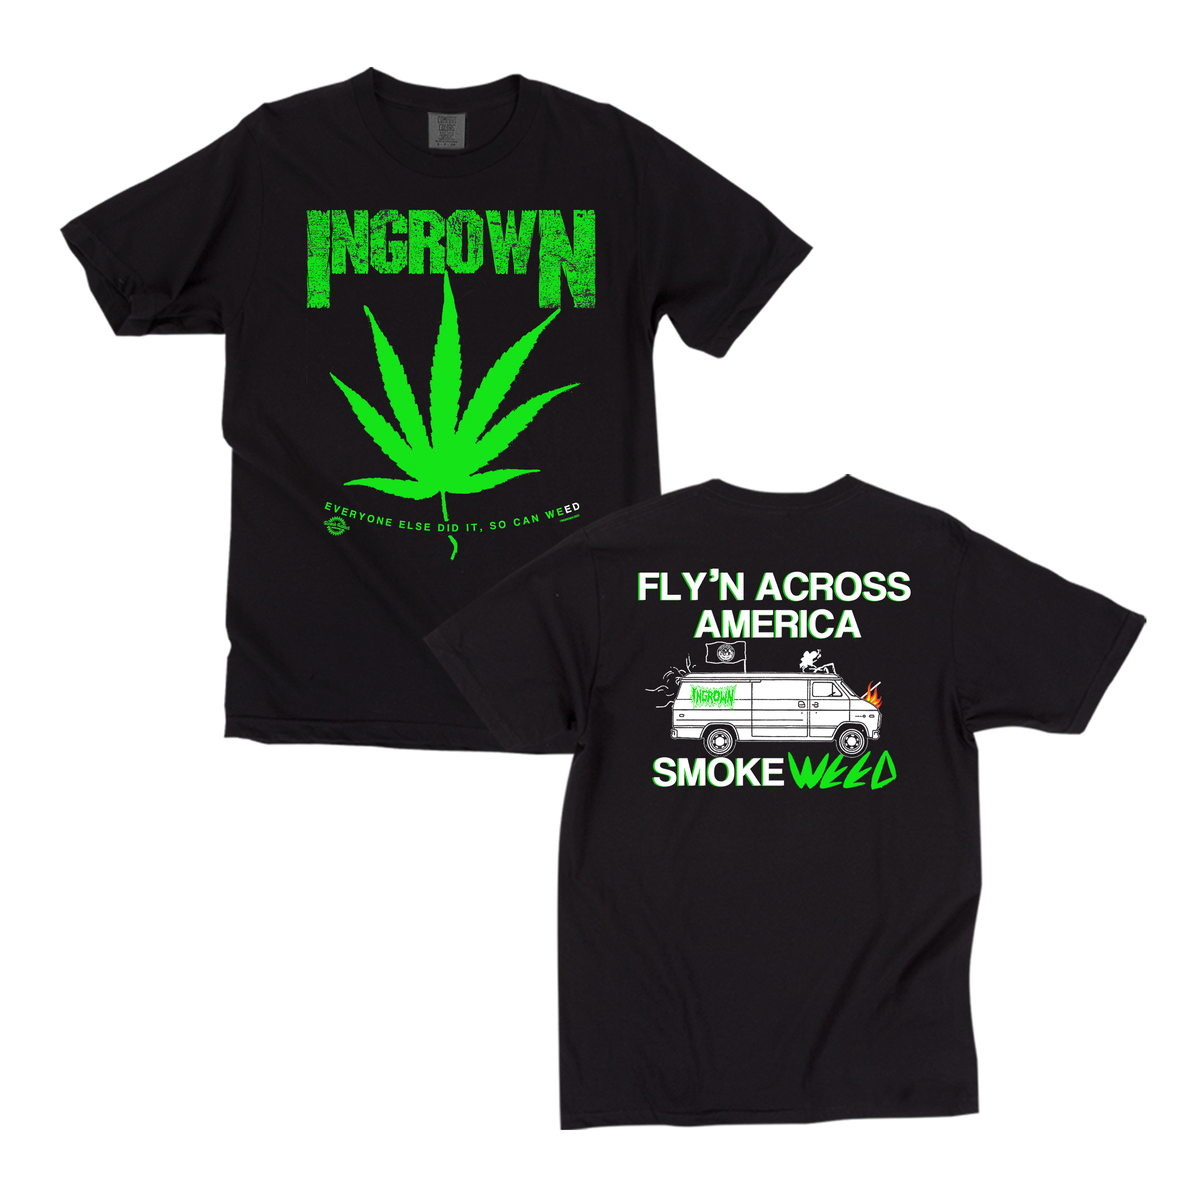 Ingrown Fly'n T-shirt *PREORDER*